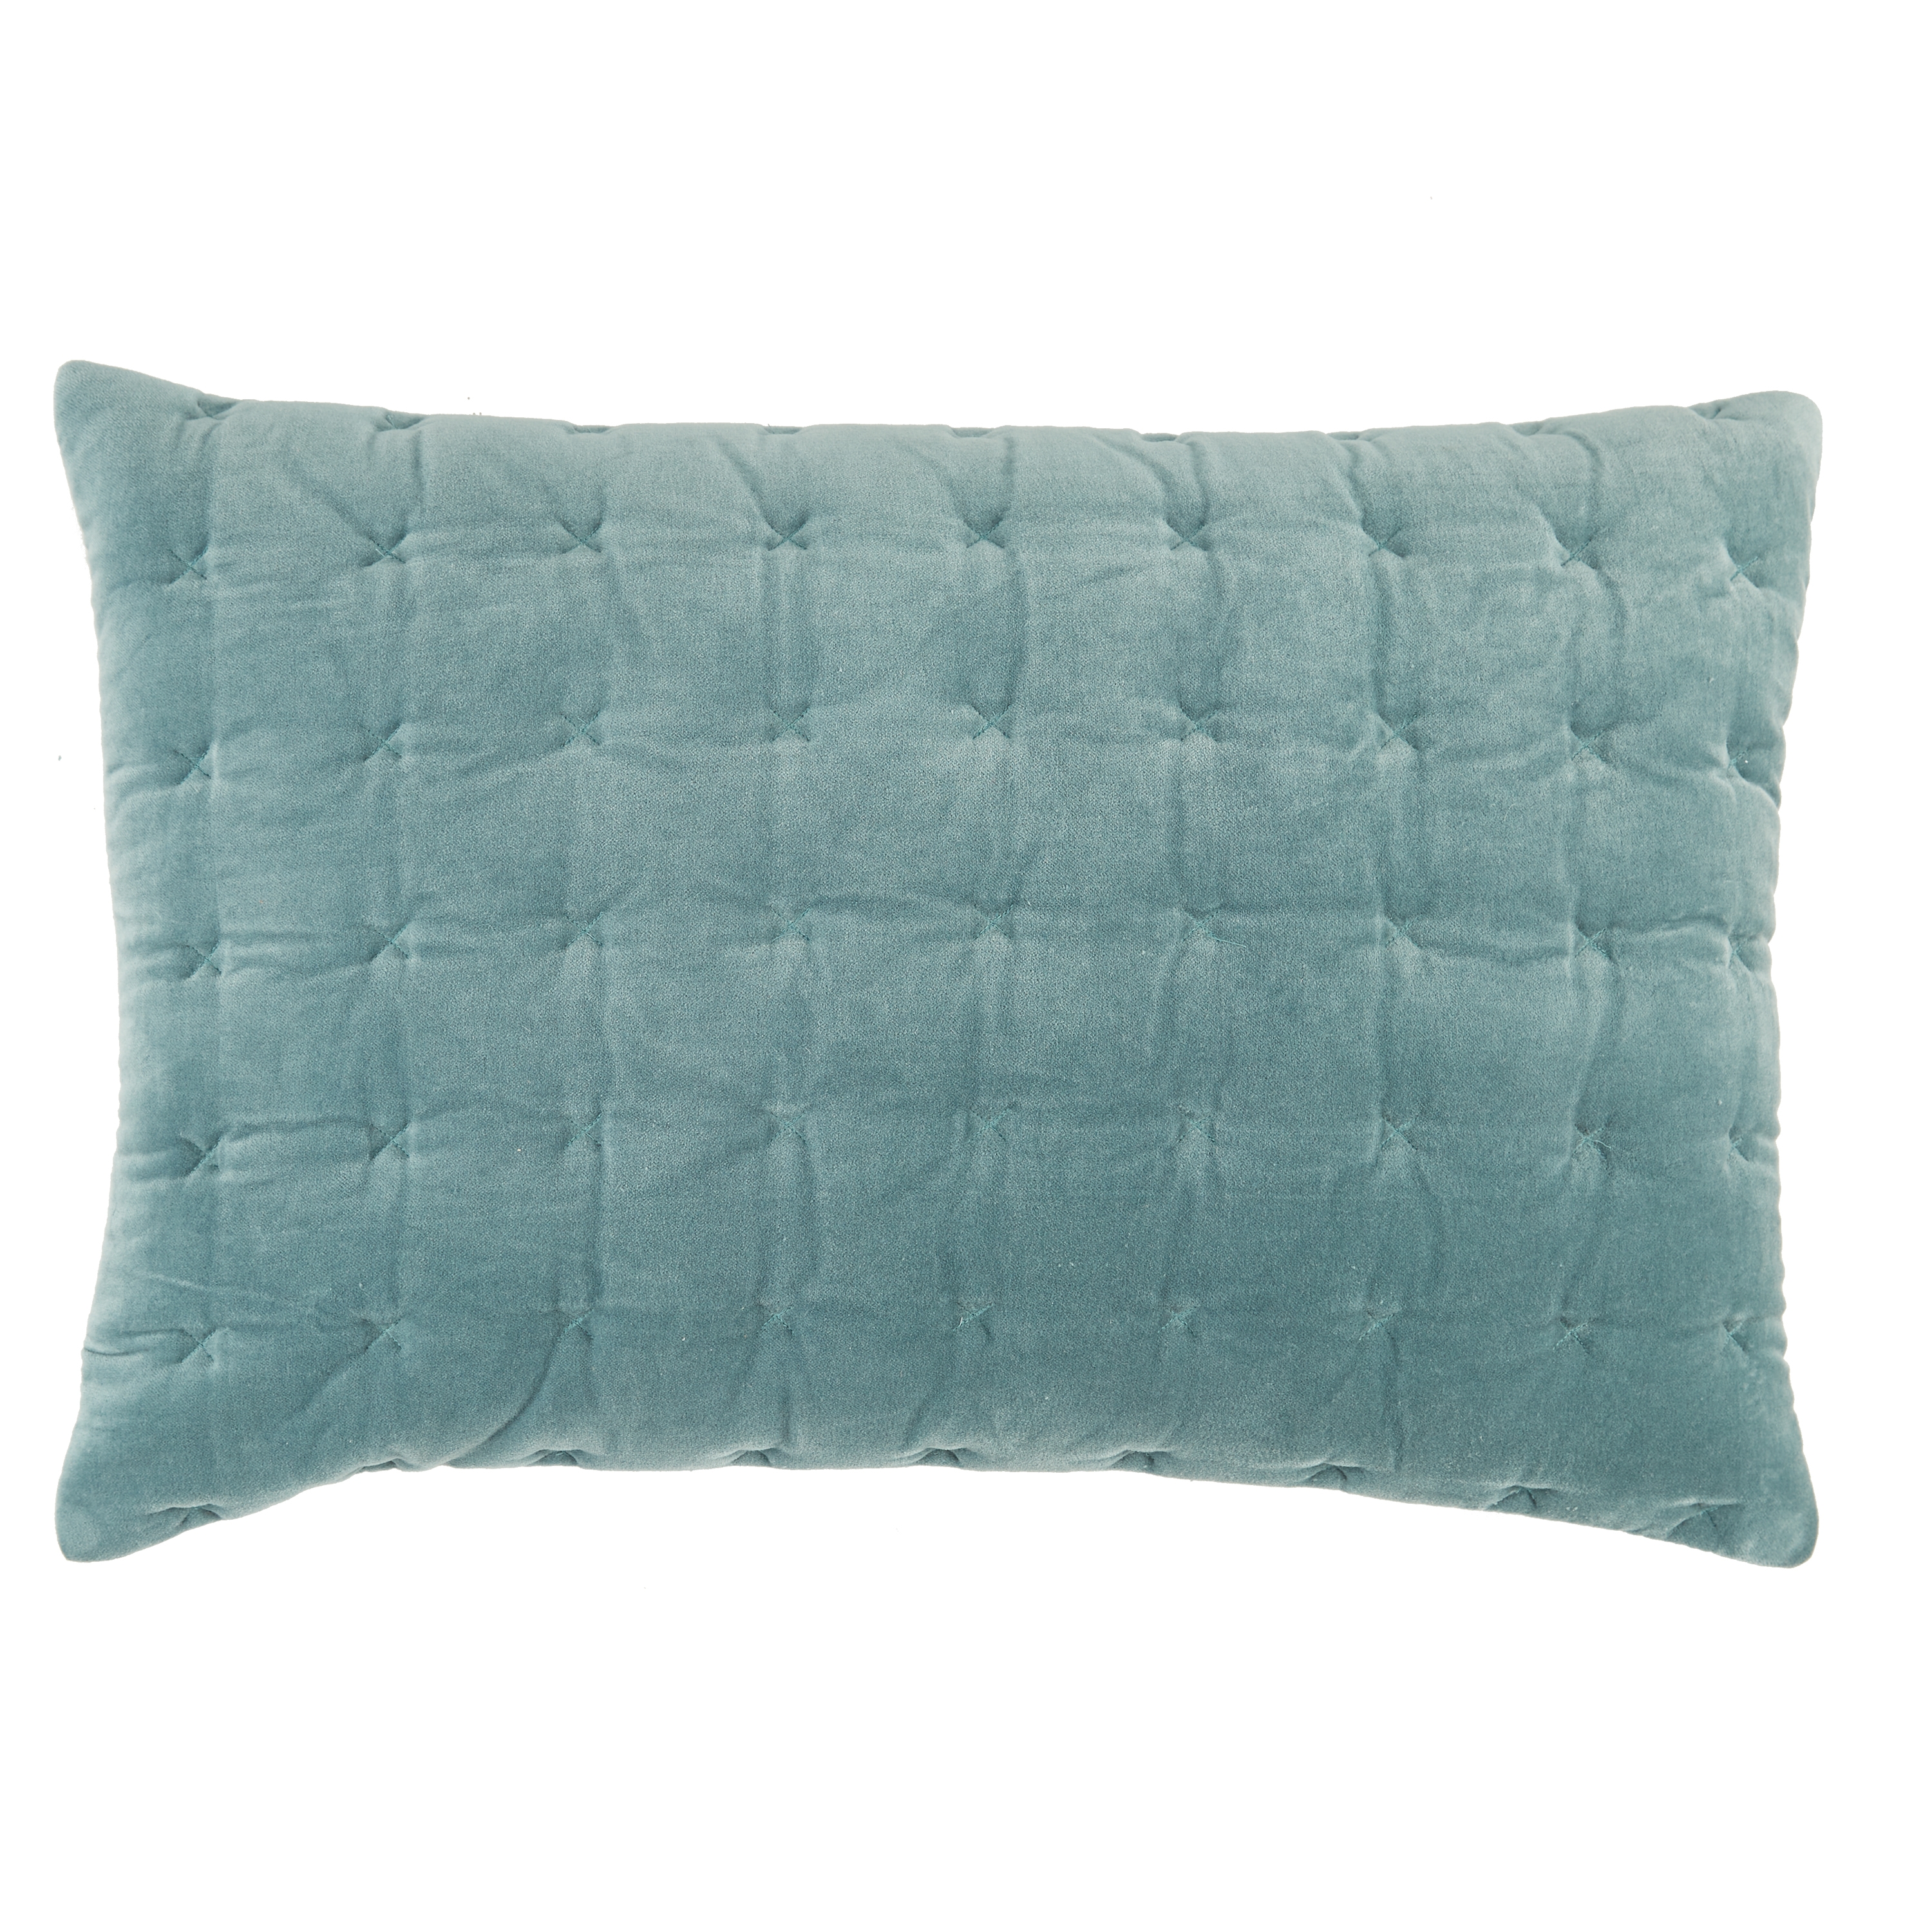 Design (US) Blue 16"X24" Pillow - Image 0